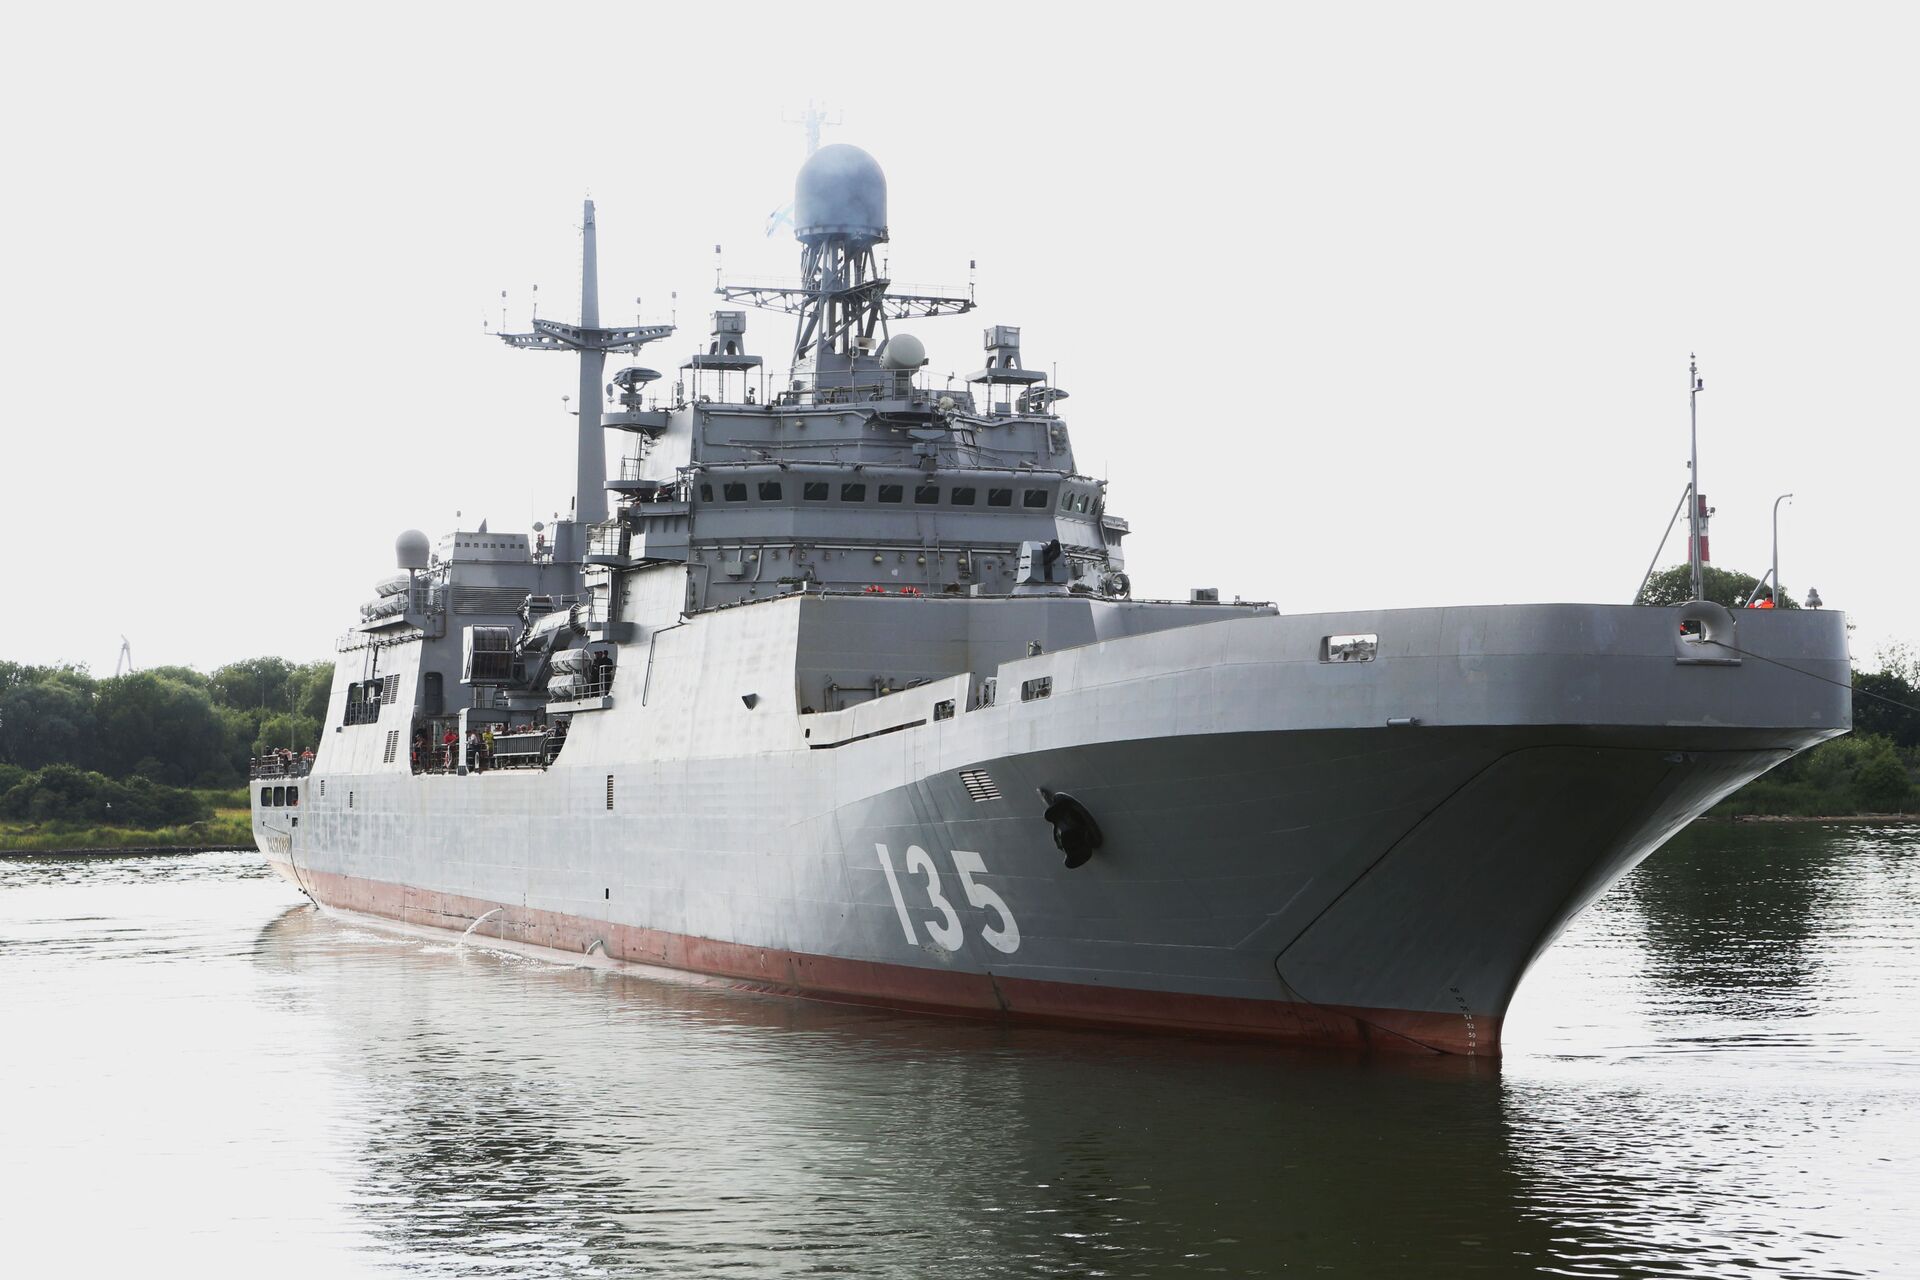 Tàu đổ bộ lớn Ivan Gren của Hải quân Nga cập cảng quân sự Baltiysk sau lần xuất cảng đầu tiên để thử nghiệm trên biển. - Sputnik Việt Nam, 1920, 28.10.2021